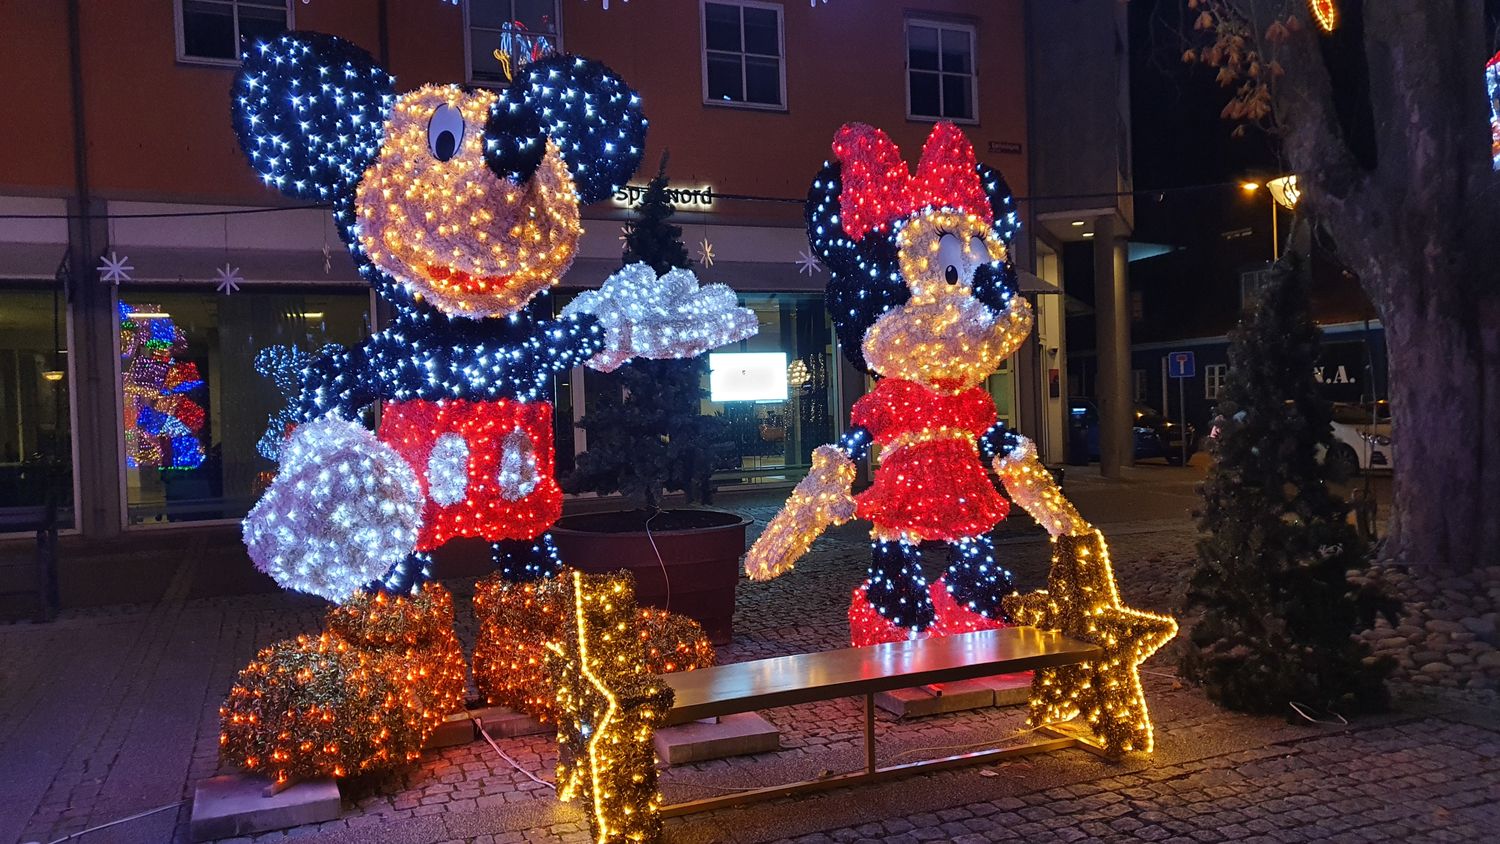 Mickey og Minnie